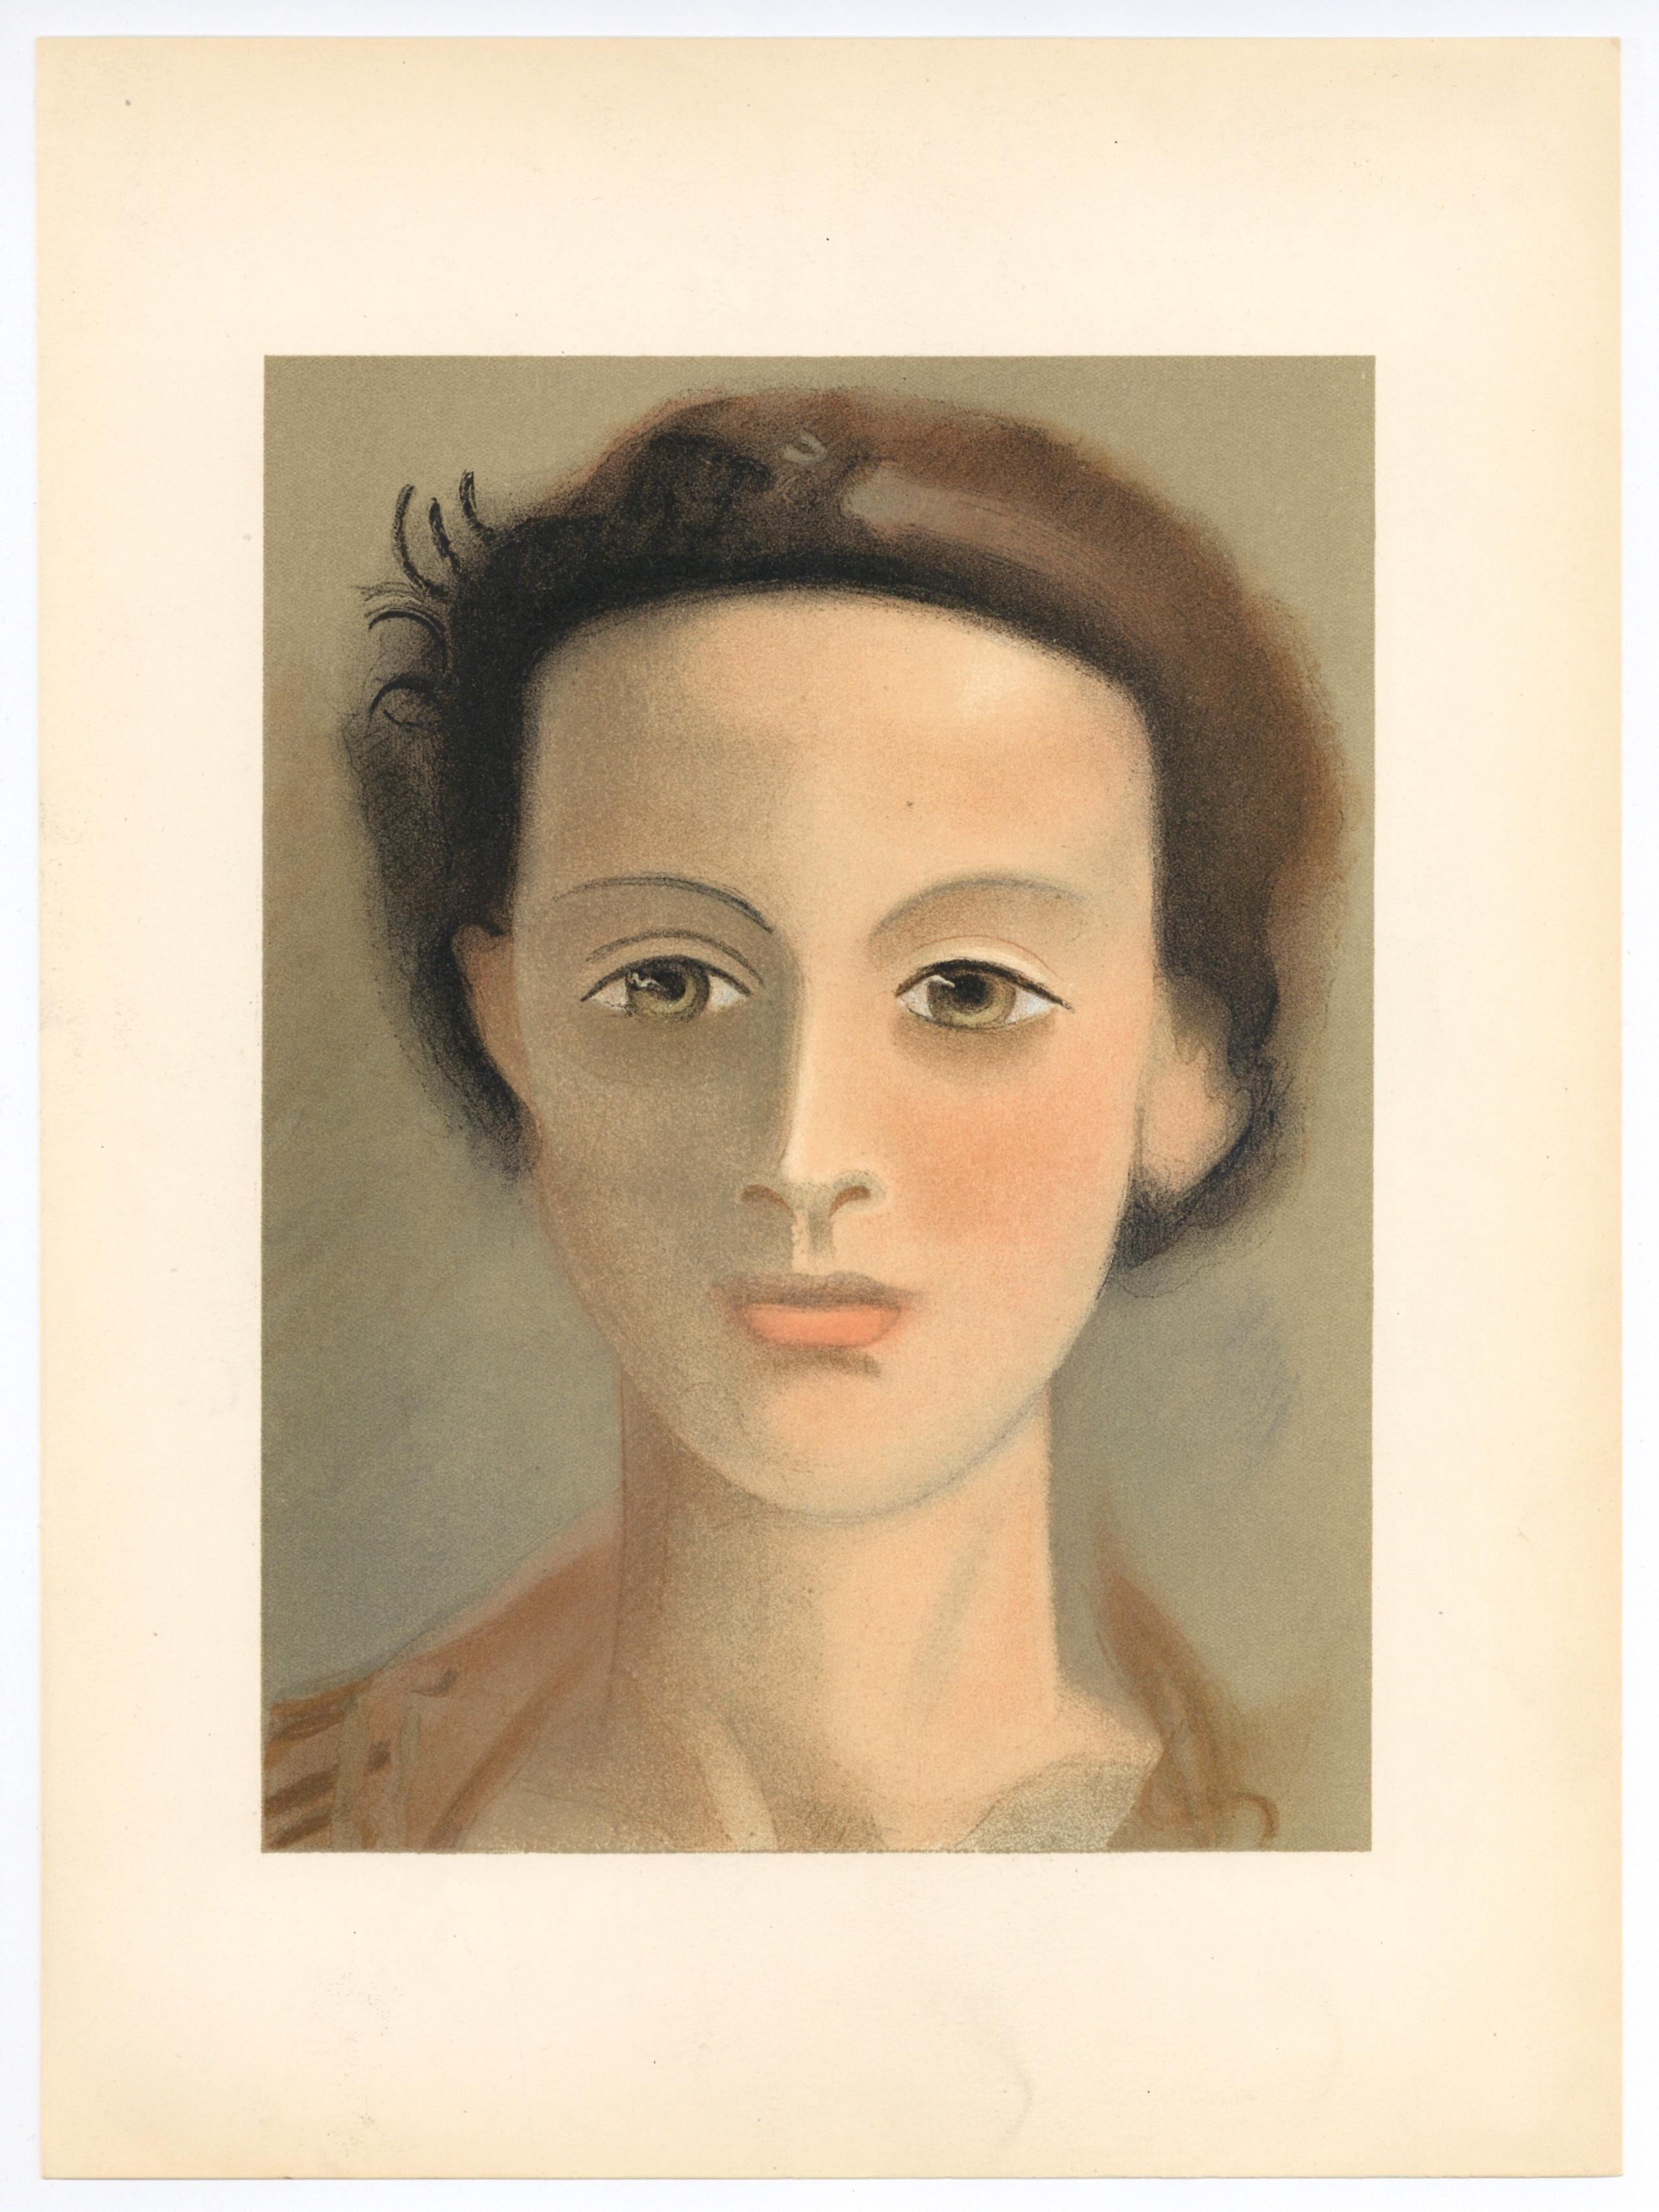 Derain, portrait d’une Jeune Fille, Verve: Revue Artistique (after) - Modern Print by André Derain